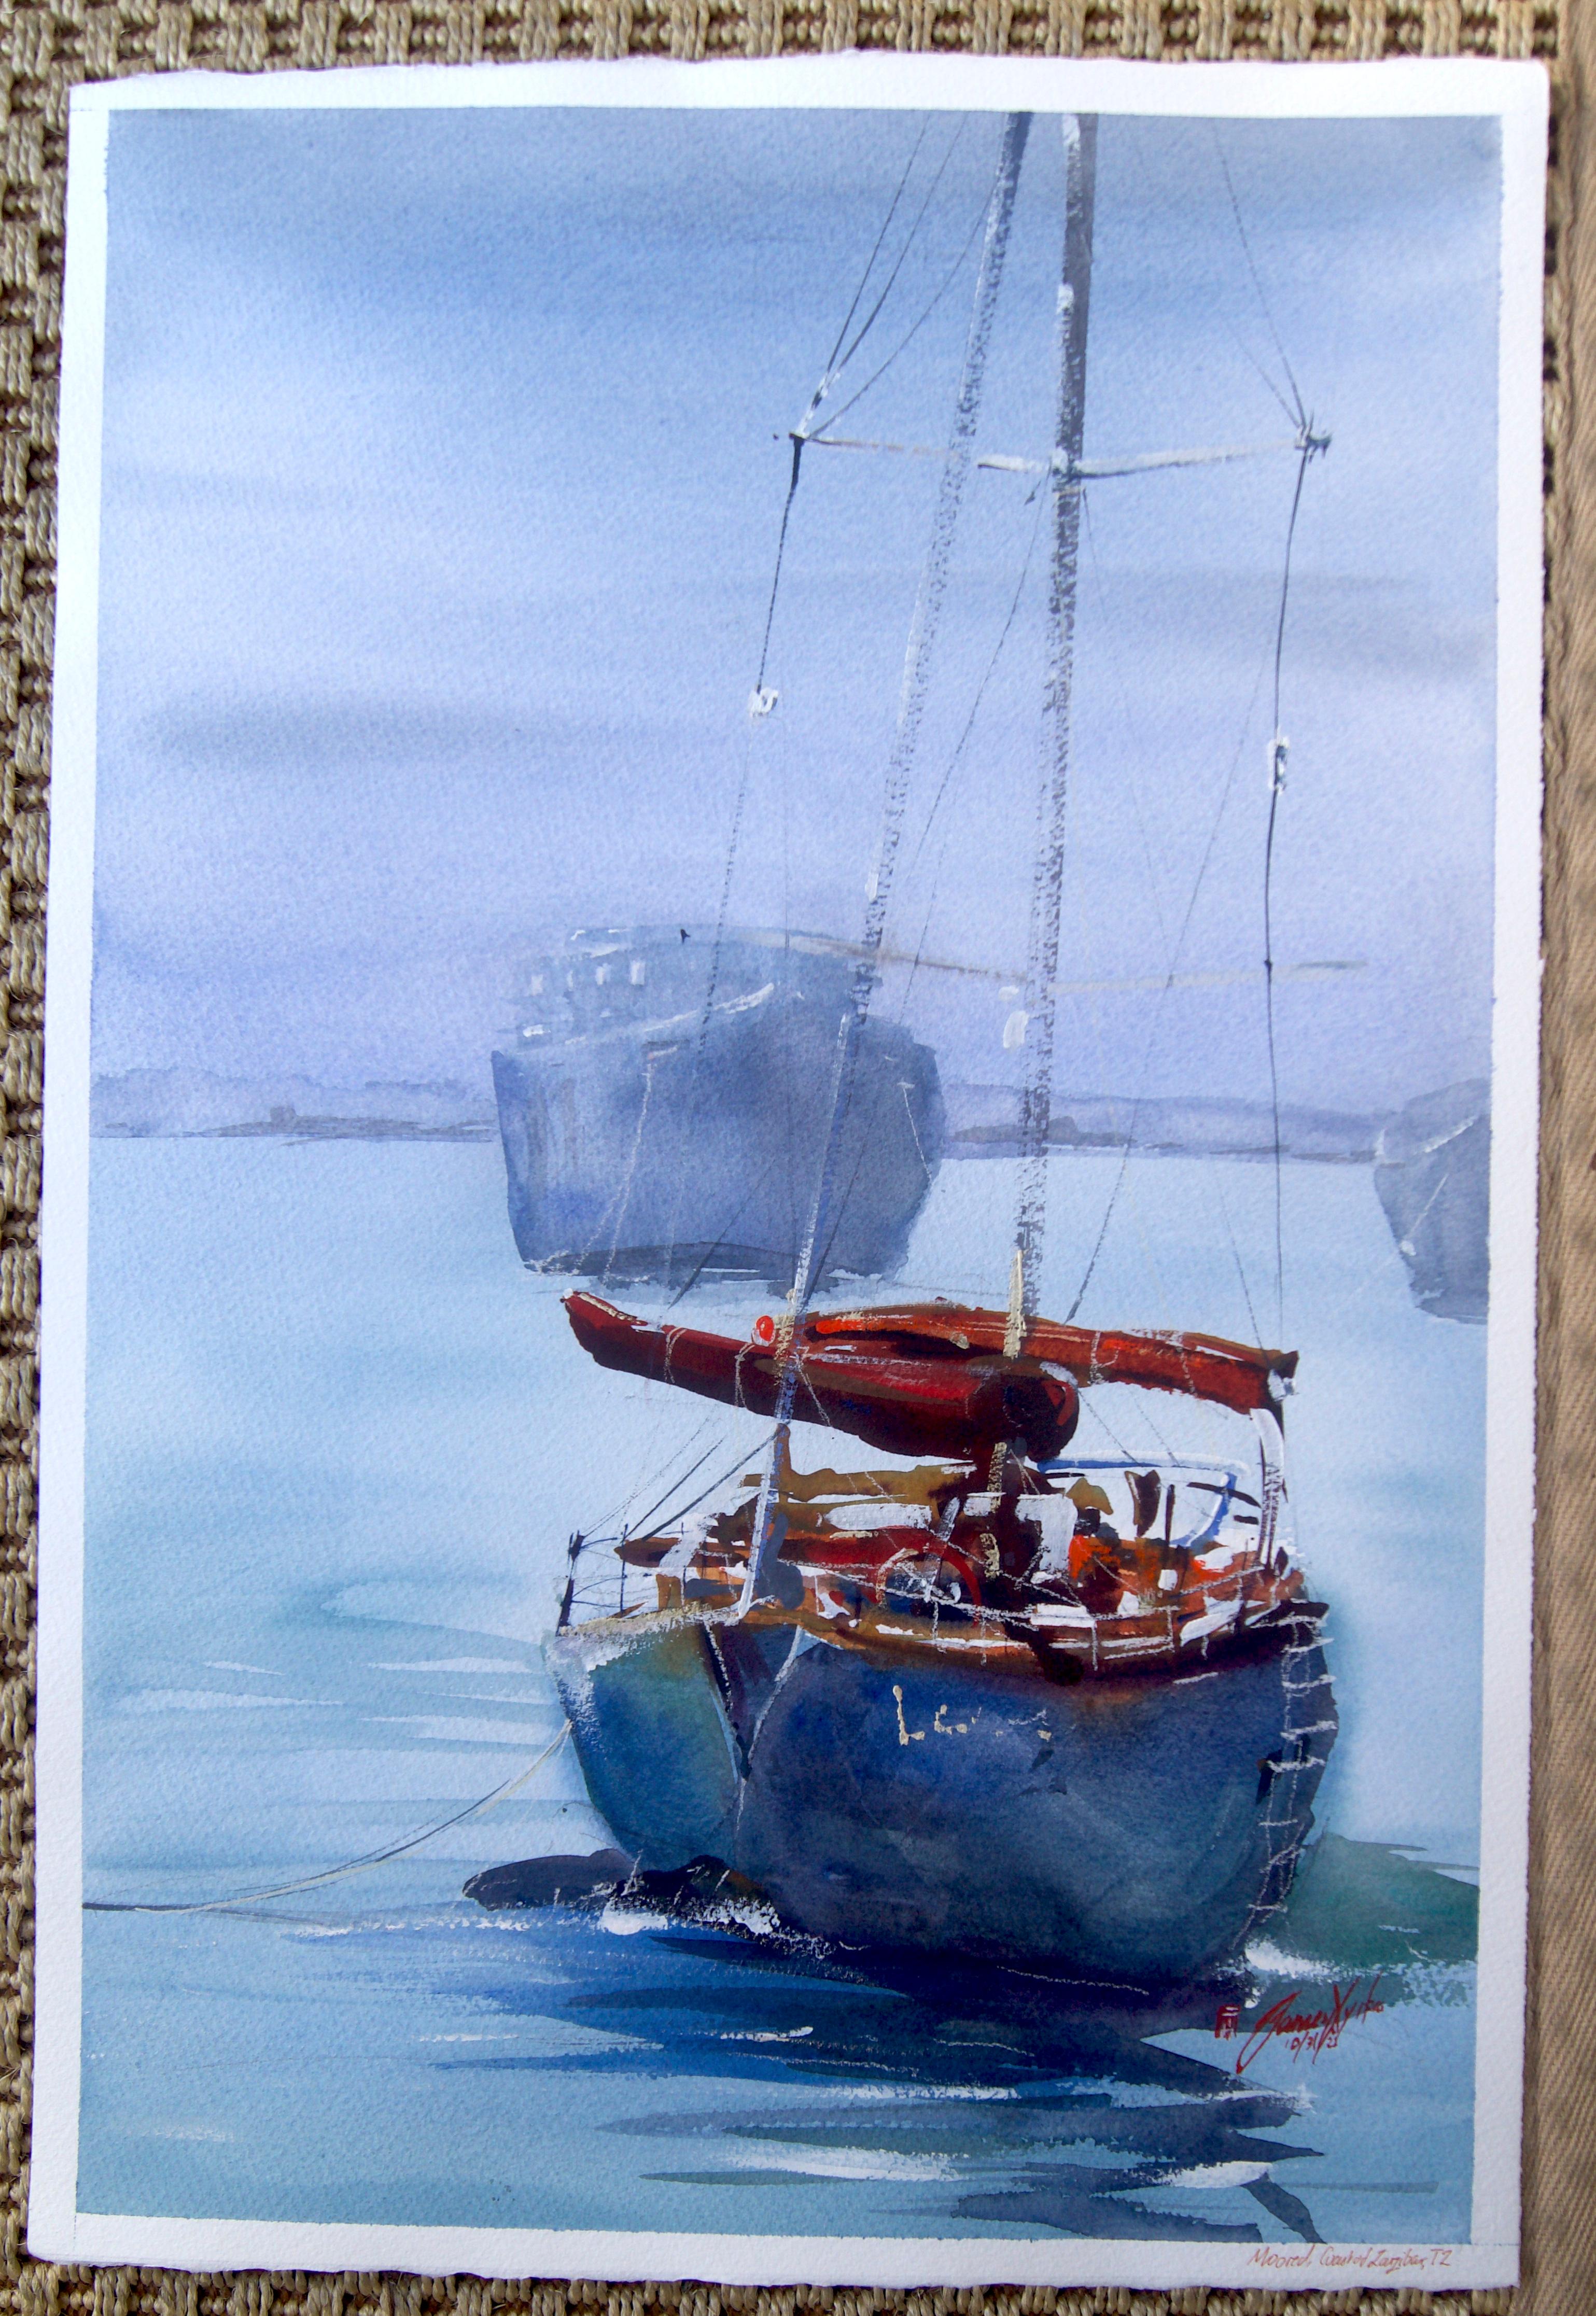 <p>Commentaires de l'artiste<br>L'artiste James Nyika capture le calme des eaux calmes d'un matin brumeux. Un yacht solitaire flotte paisiblement au milieu d'une flotte de navires commerciaux. 